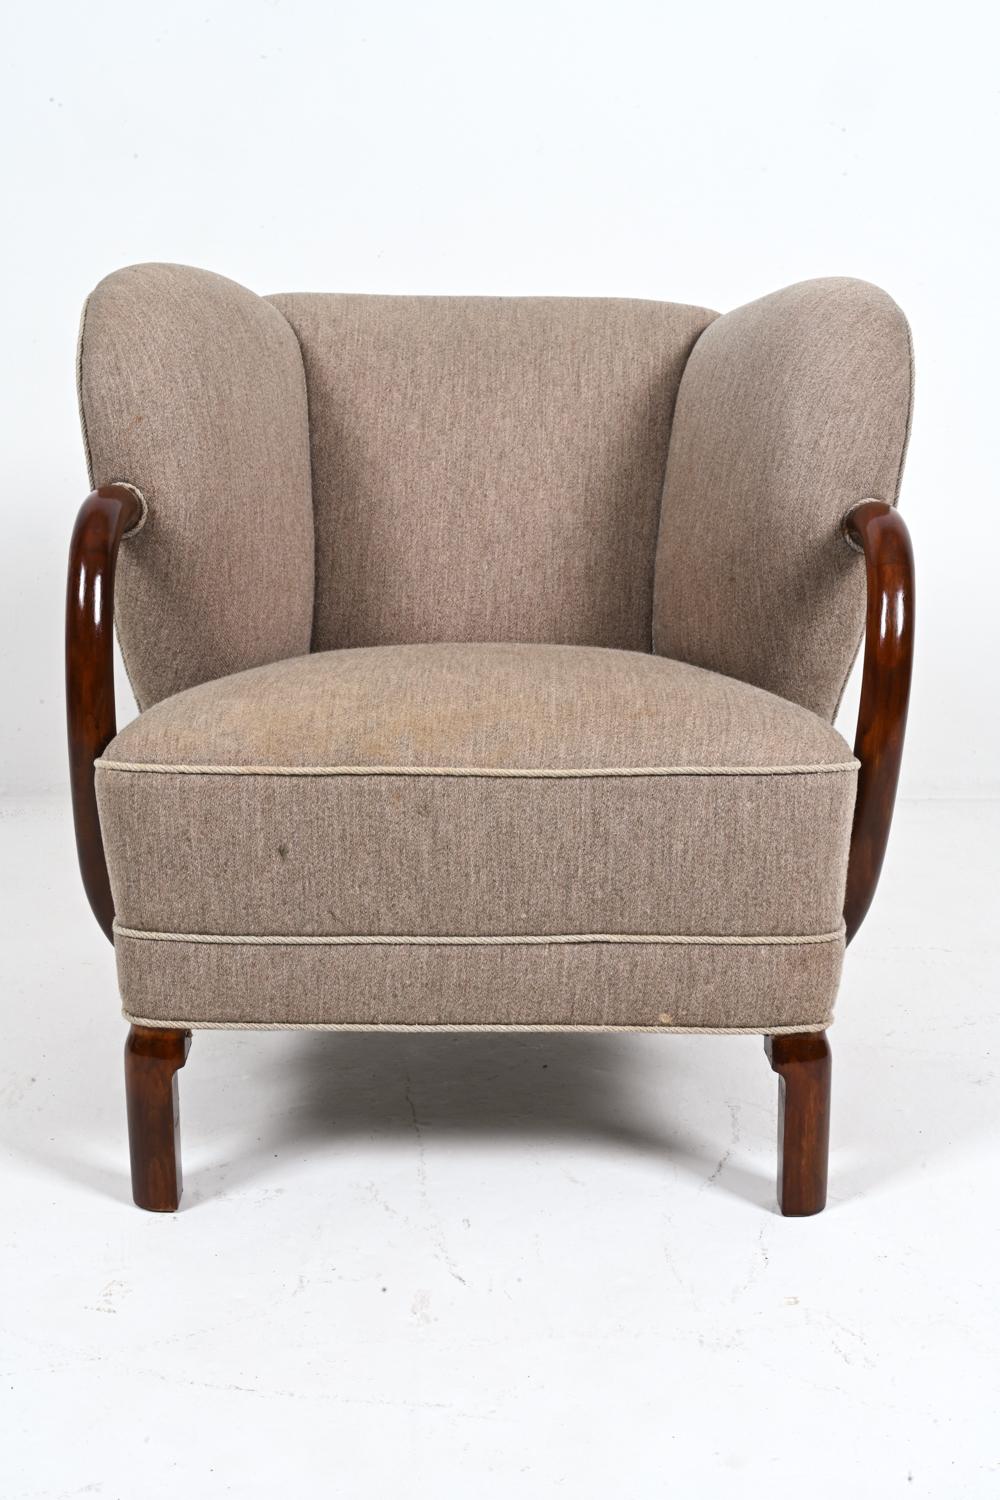 Mid-Century Modern Rare Model 107 Chair by Viggo Boesen for Slagelse Mobelvaerk, Denmark, c. 1940's For Sale